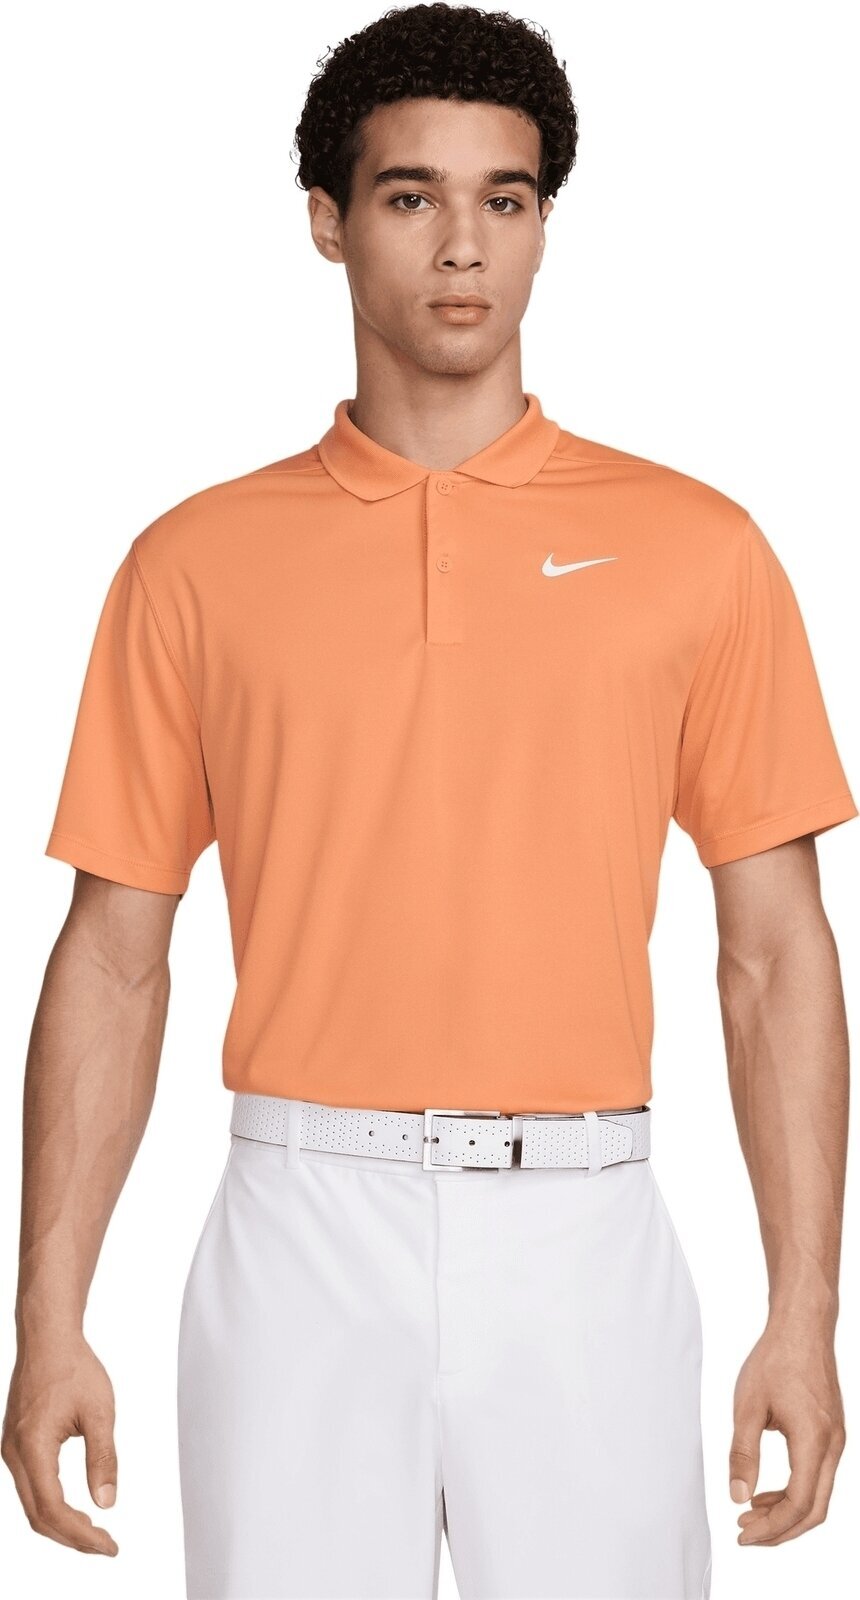 Polo Shirt Nike Dri-Fit Victory Solid Mens Polo Orange Trance/White XL Polo Shirt